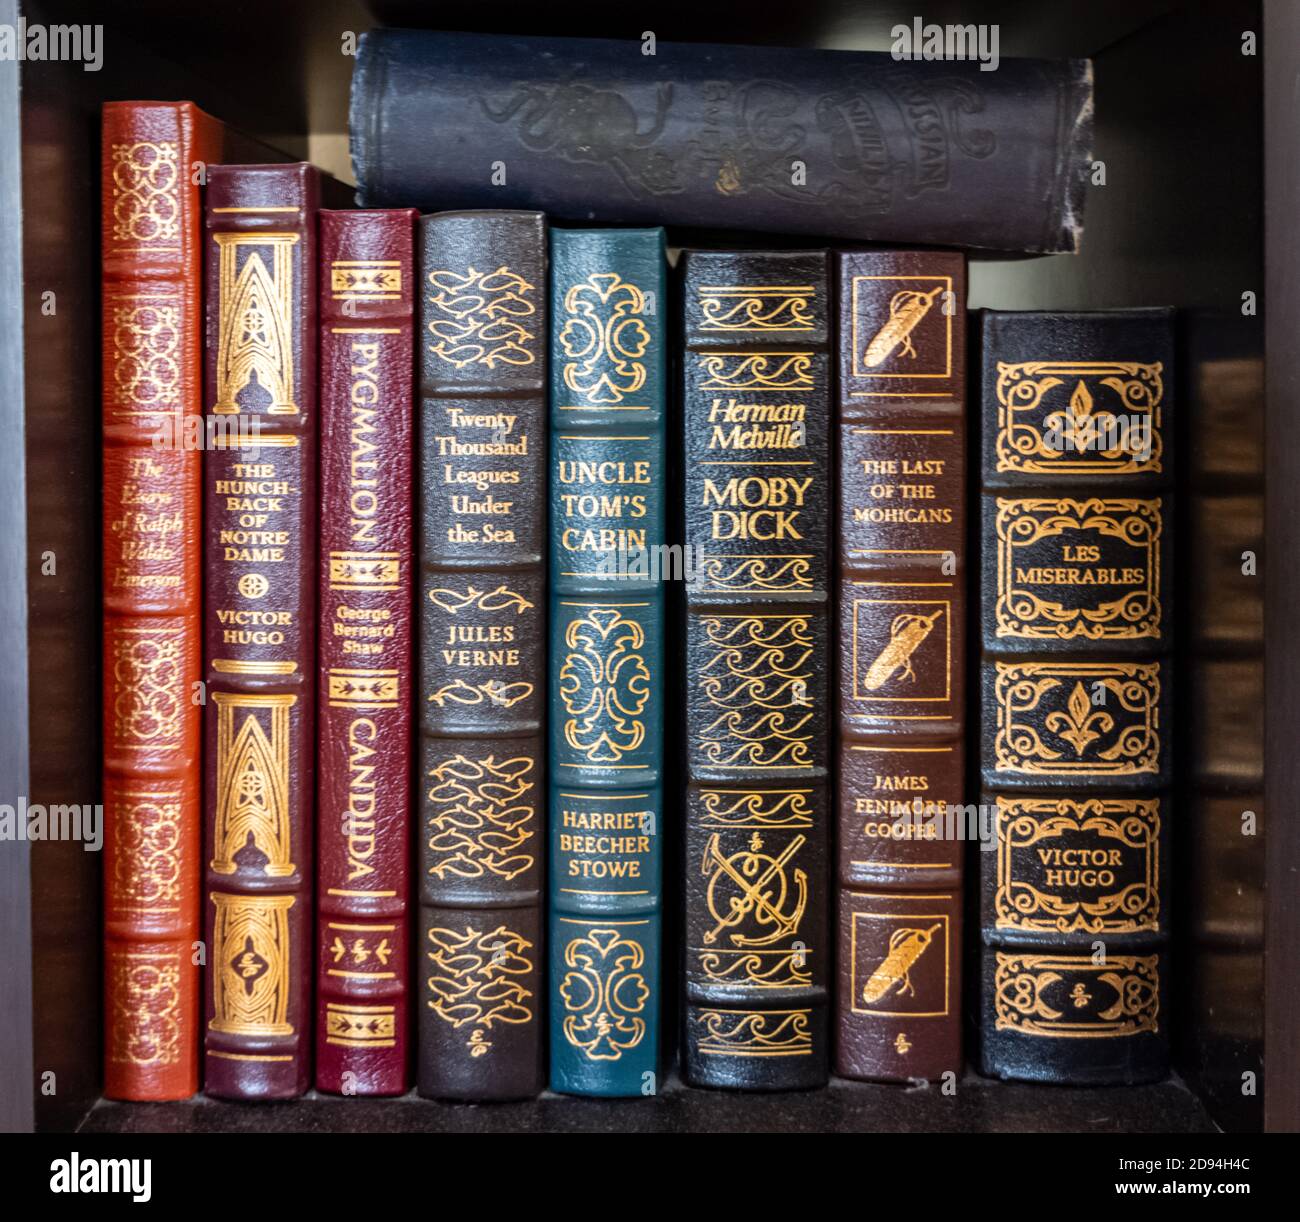 Livres classiques à couverture rigide dans une bibliothèque Photo Stock -  Alamy